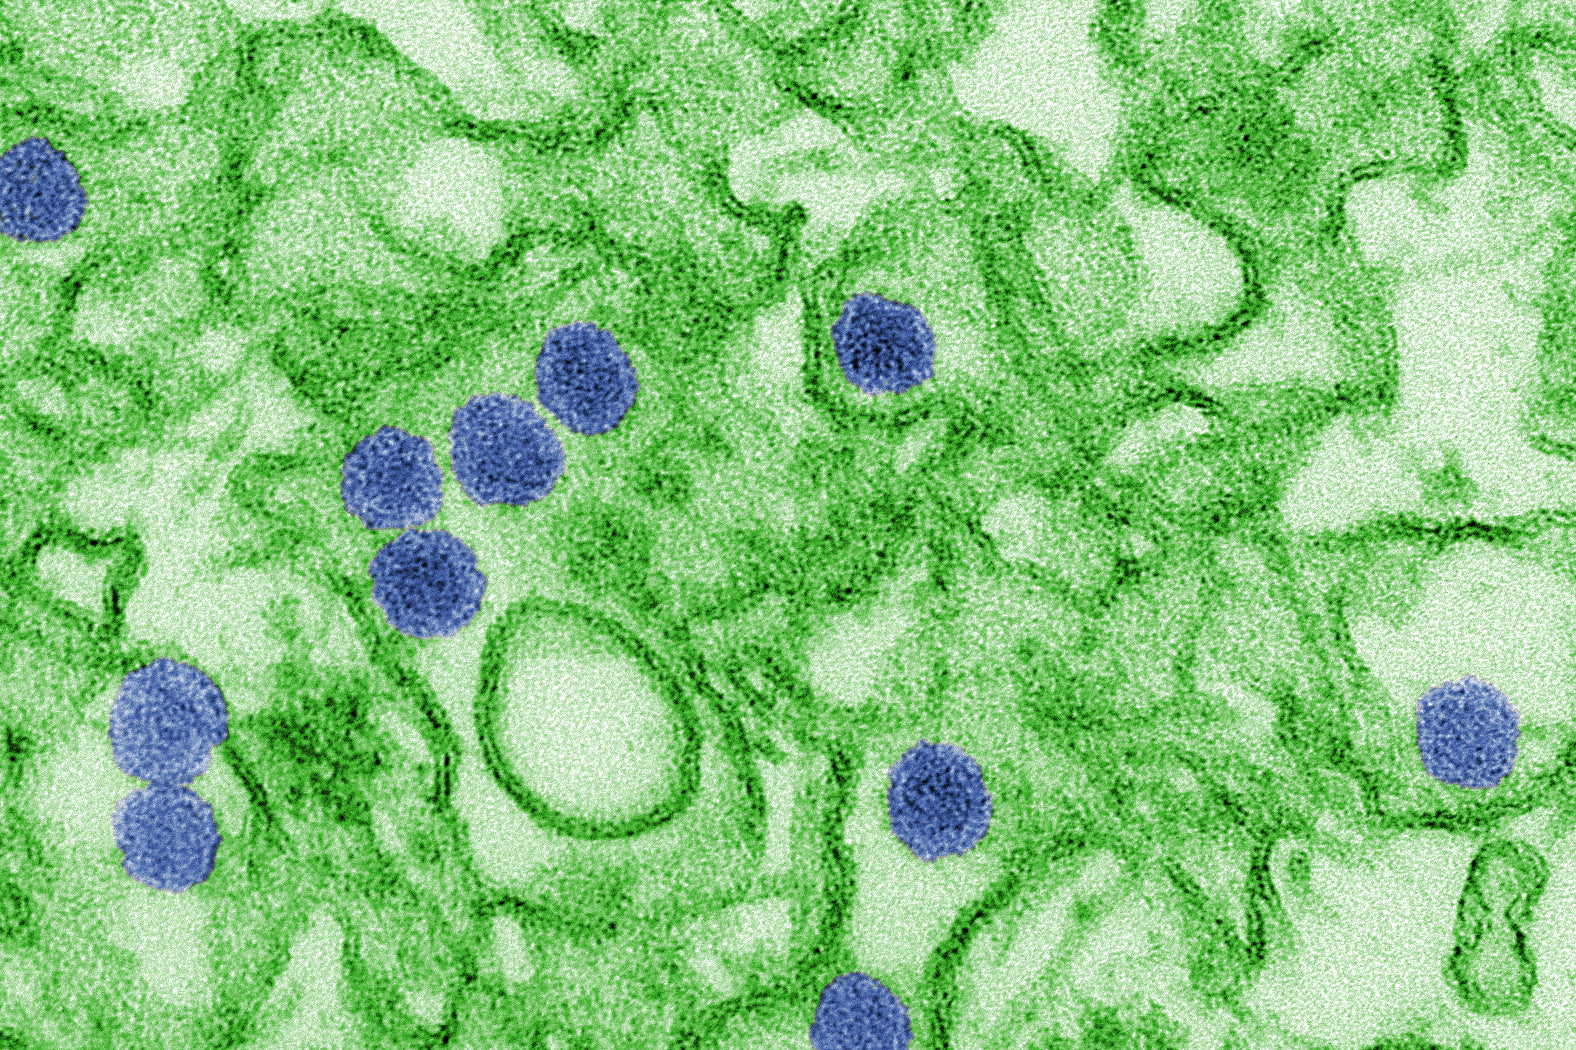 Microscope view of Zika virus